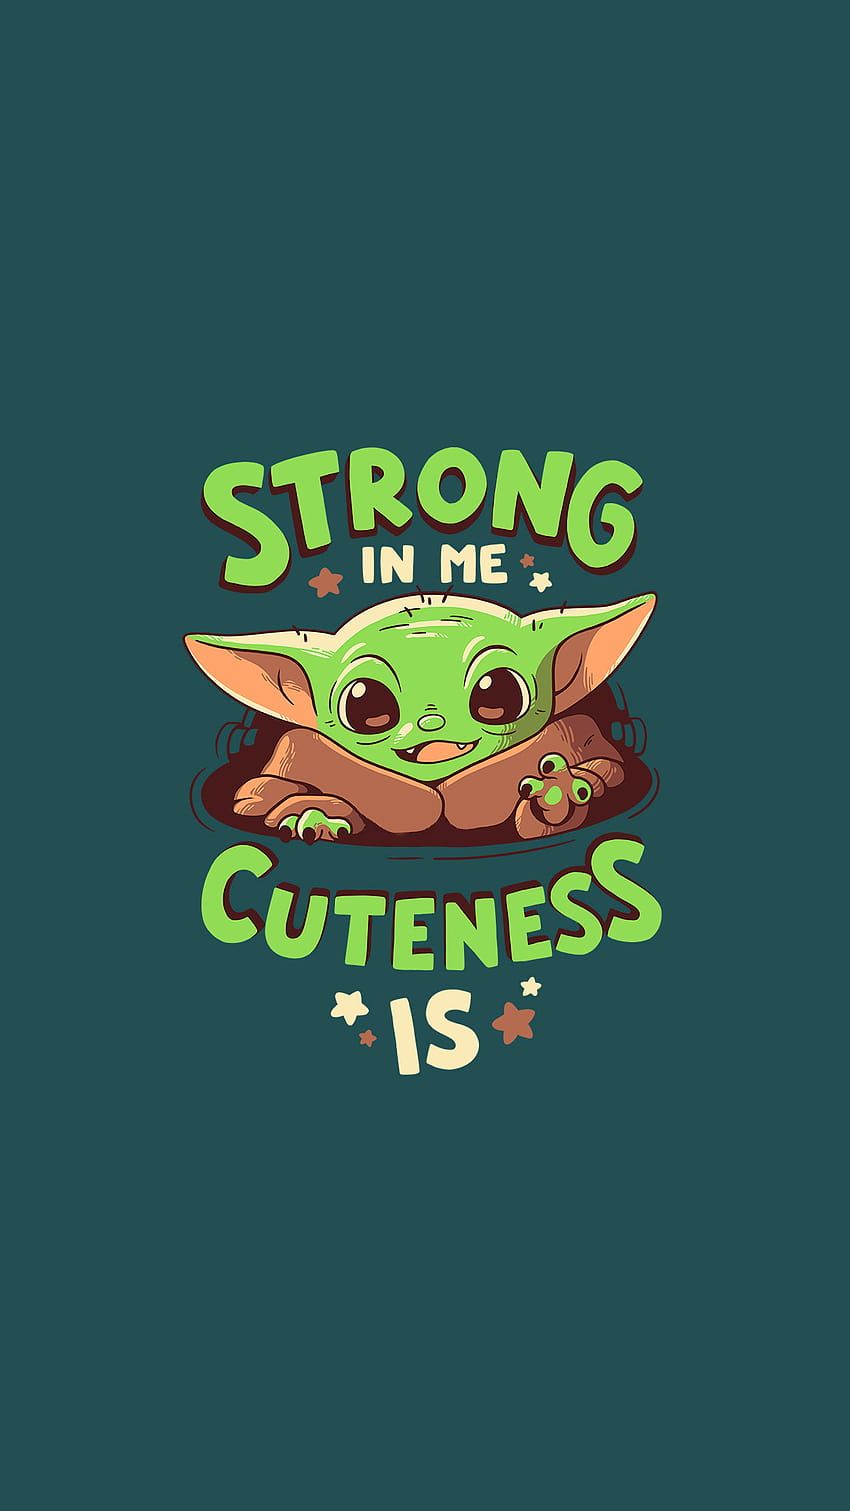 The baby yoda strong in cuteness - Baby Yoda